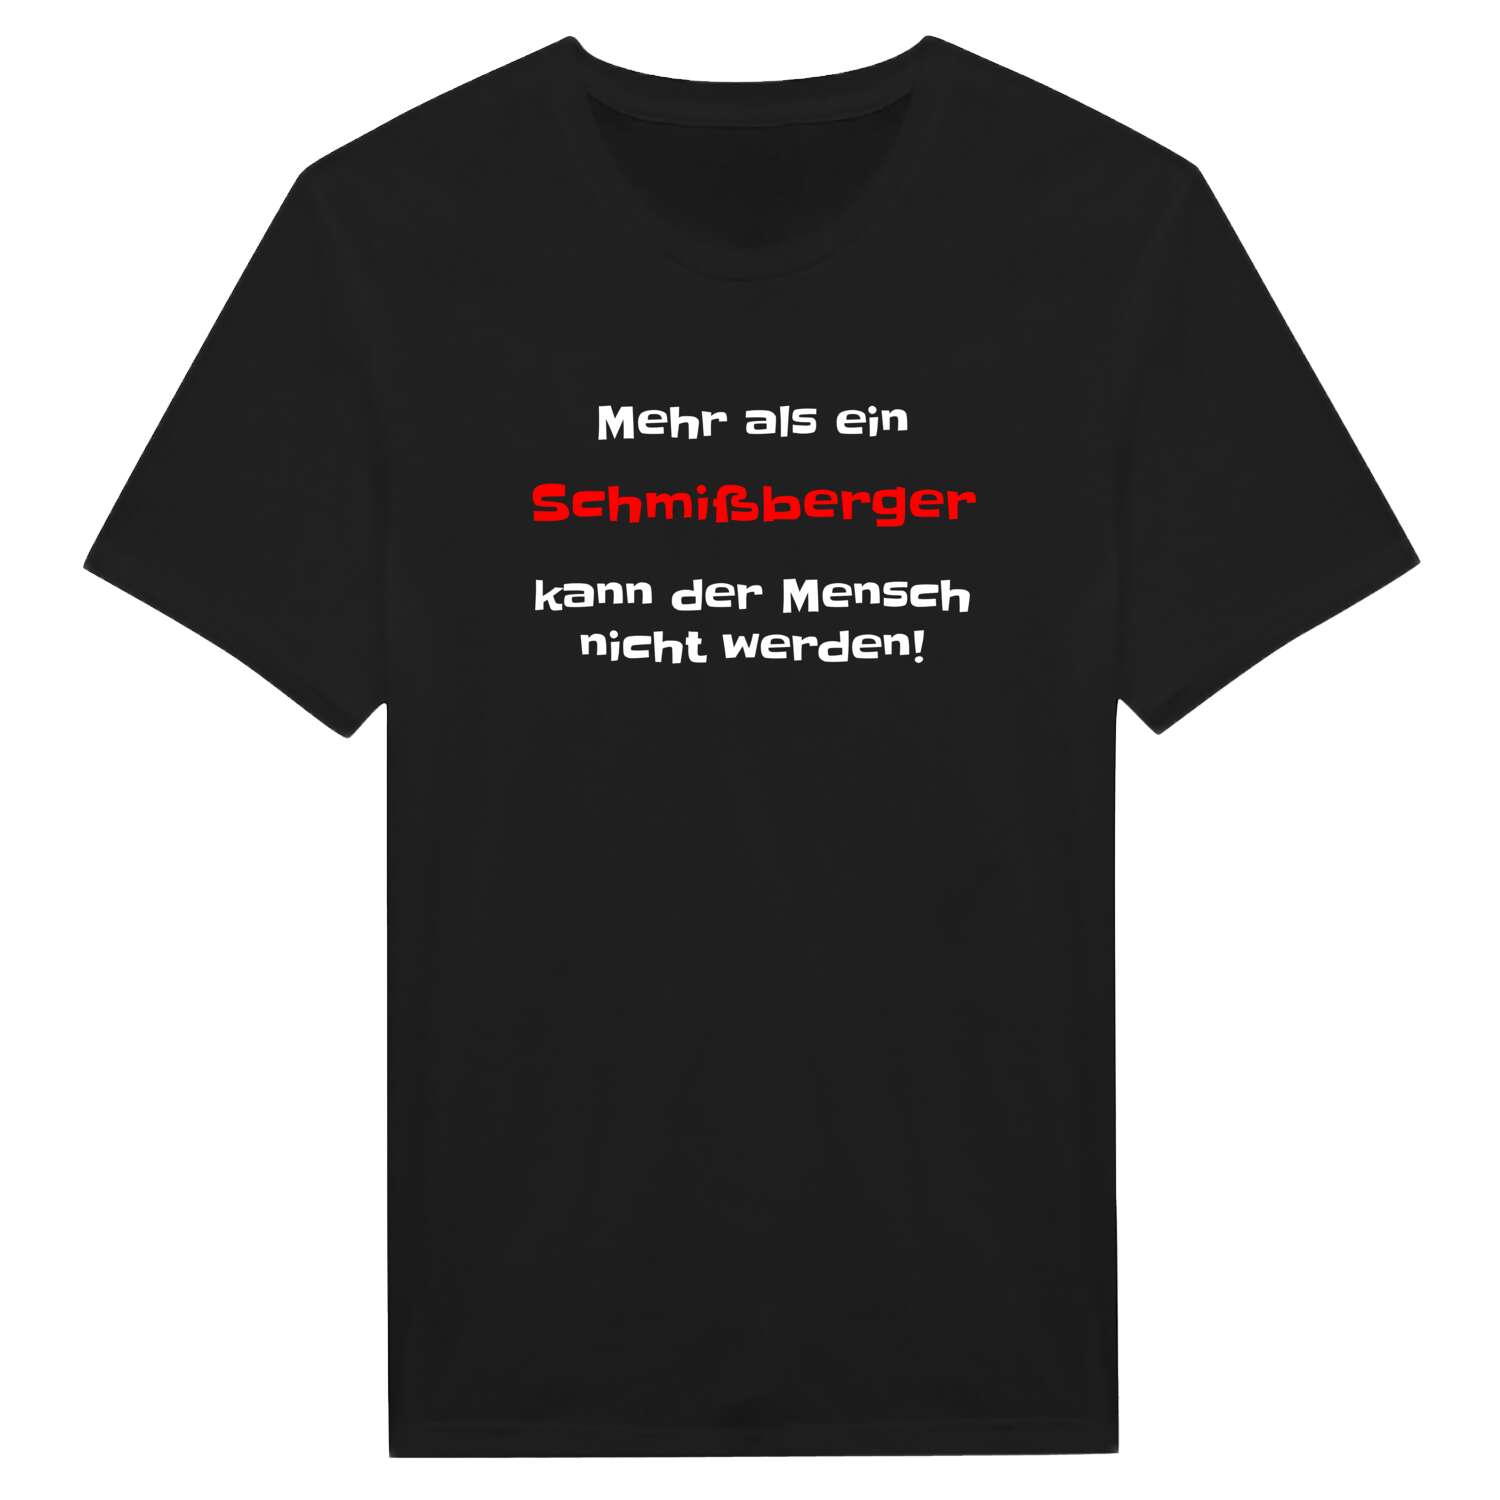 Schmißberg T-Shirt »Mehr als ein«